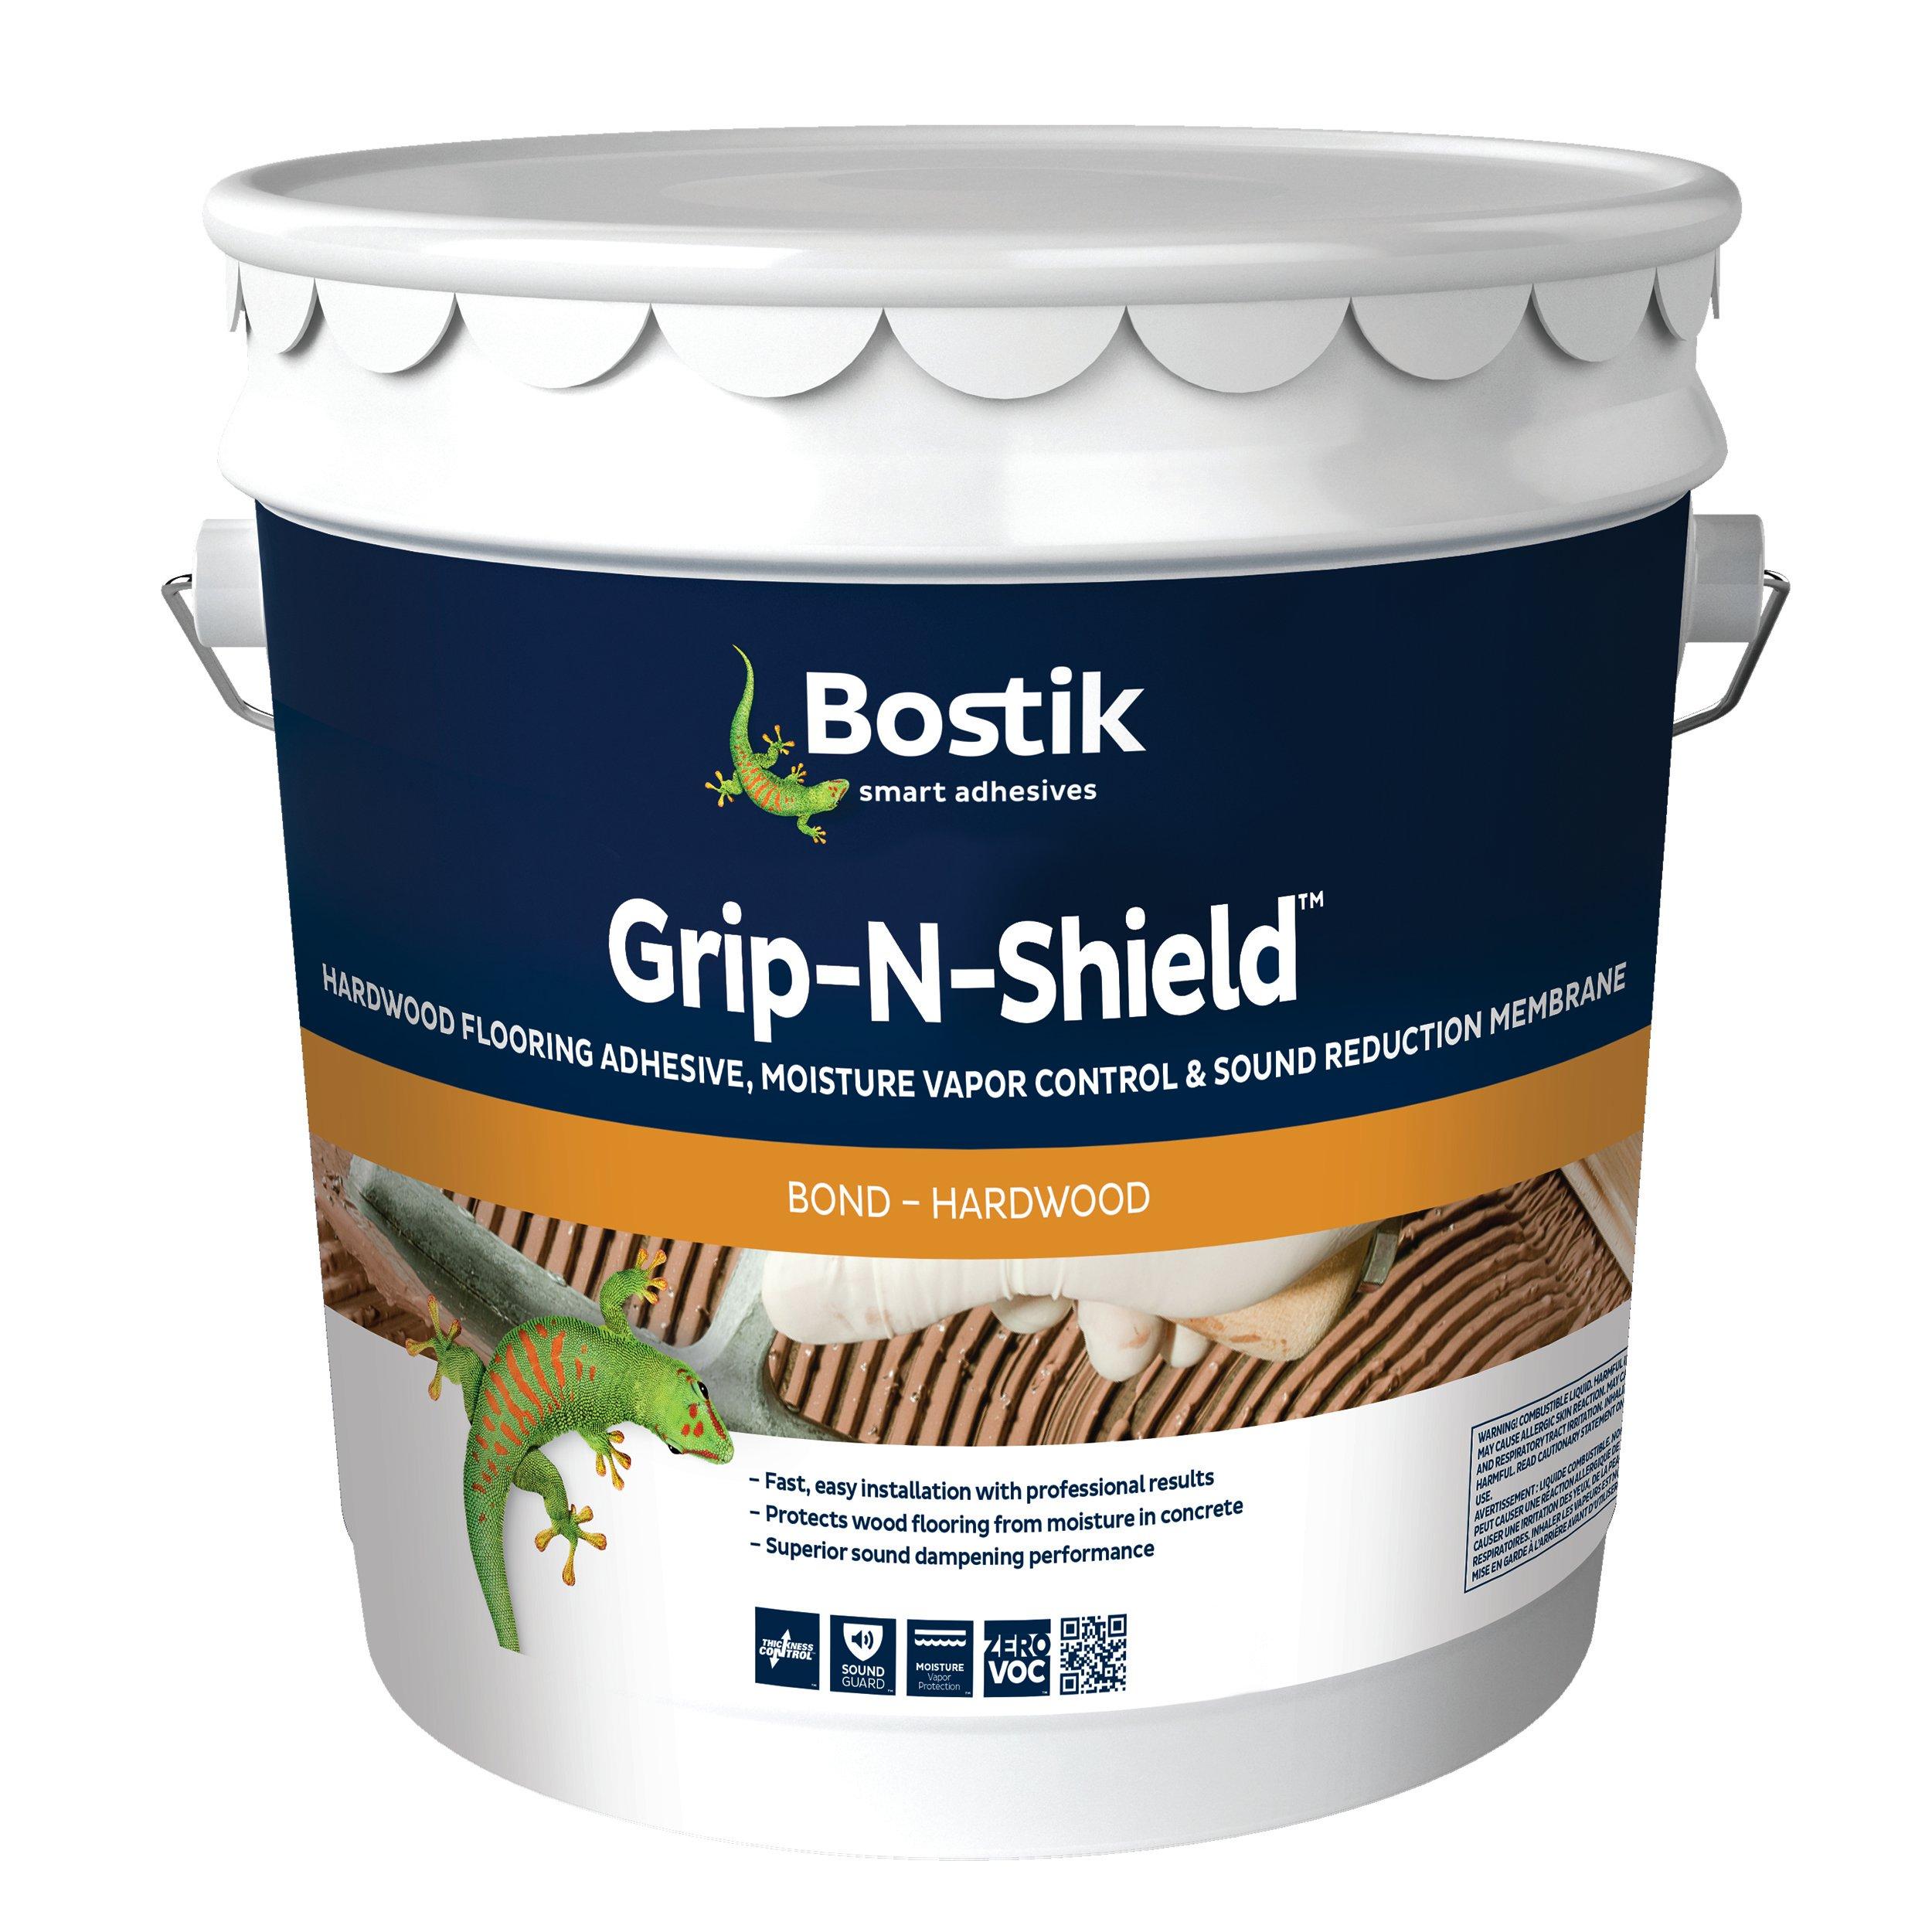 Bostik Grip-N-Shield Hardwood Flooring Adhesive